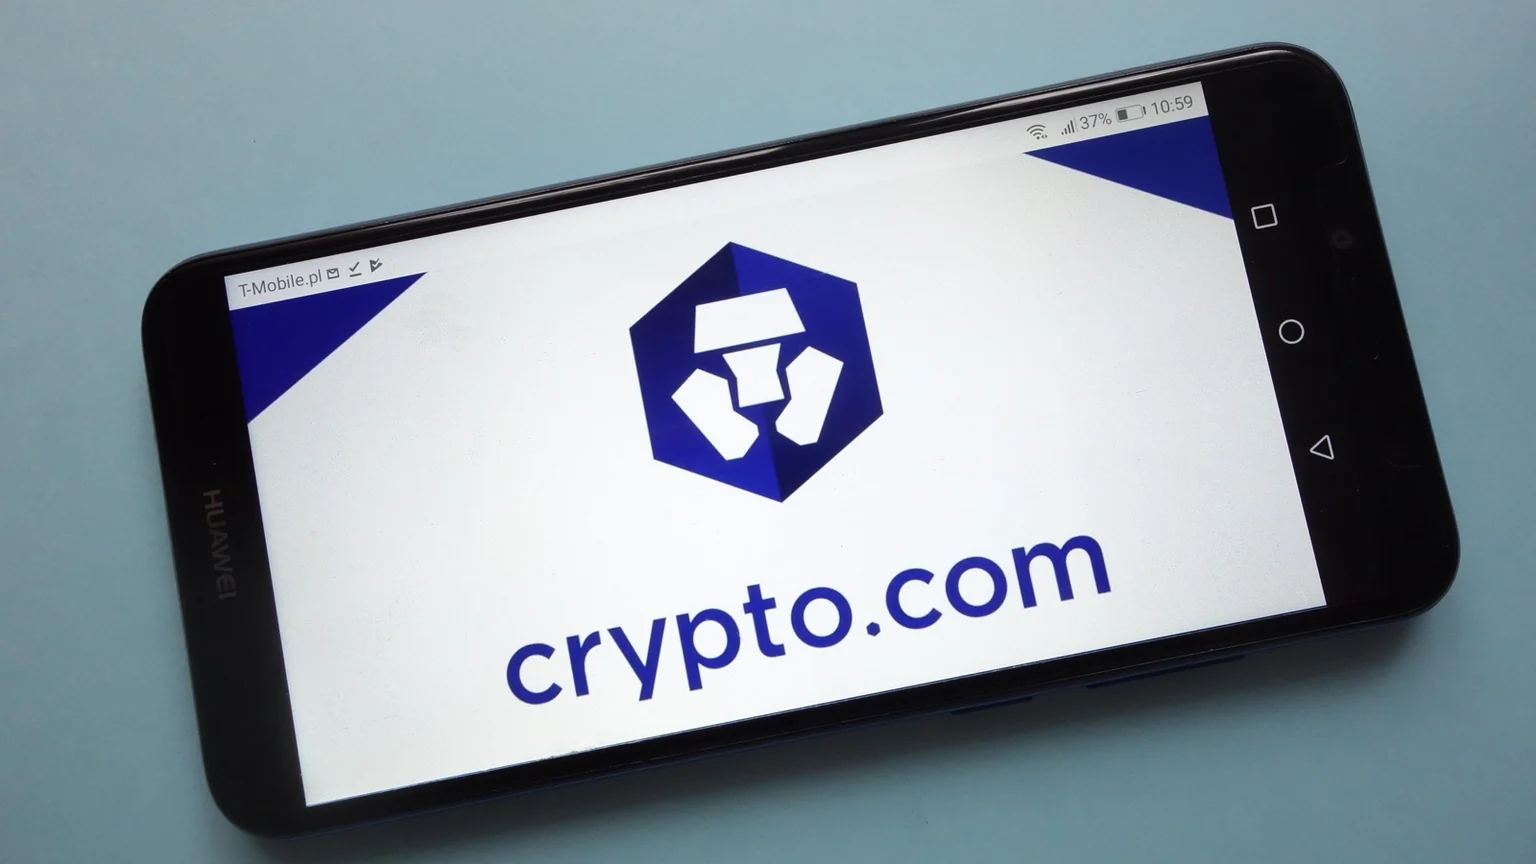 El logotipo de la criptomoneda Crypto.com (MCO) aparece en el smartphone